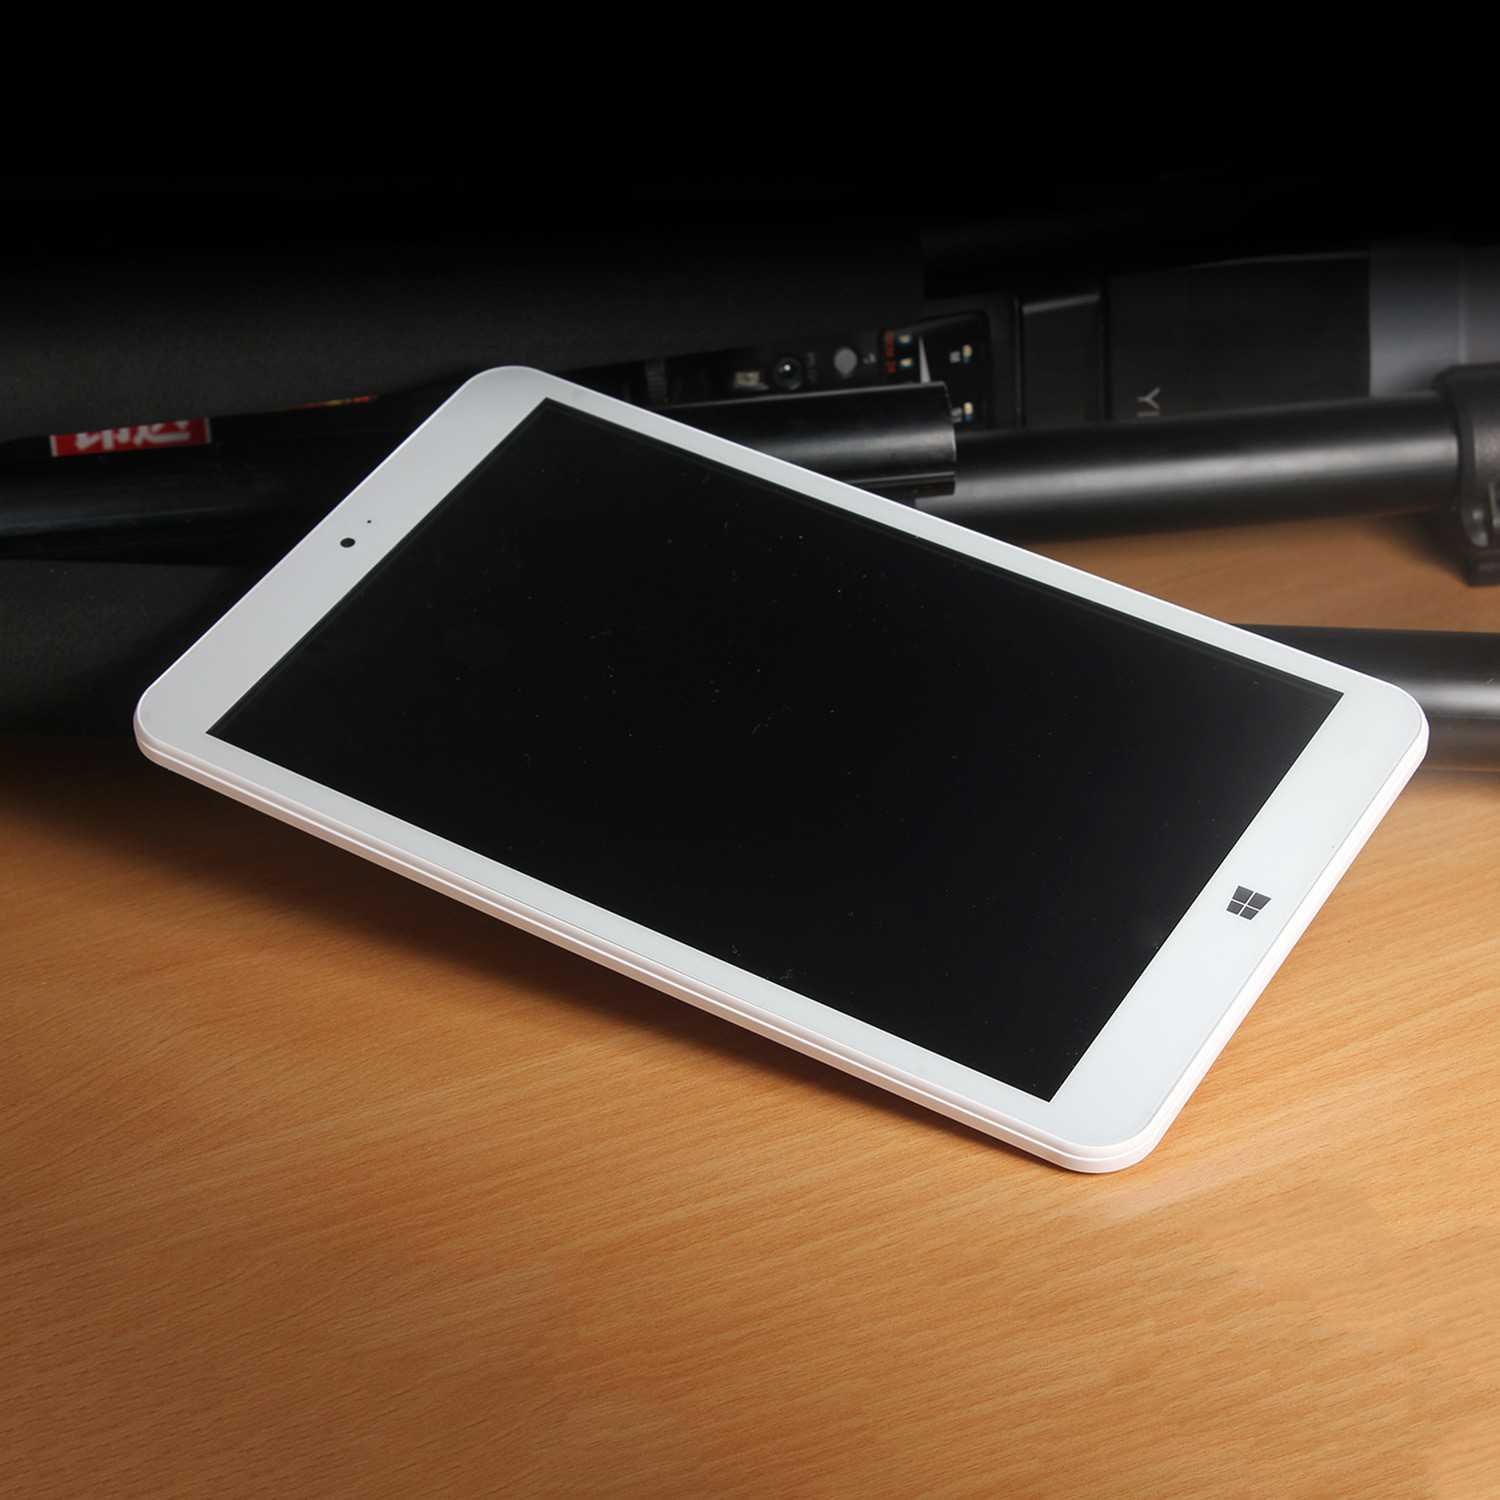 La Onda v820w dispose d'un design qui lui donne l'aspect d'un iPad